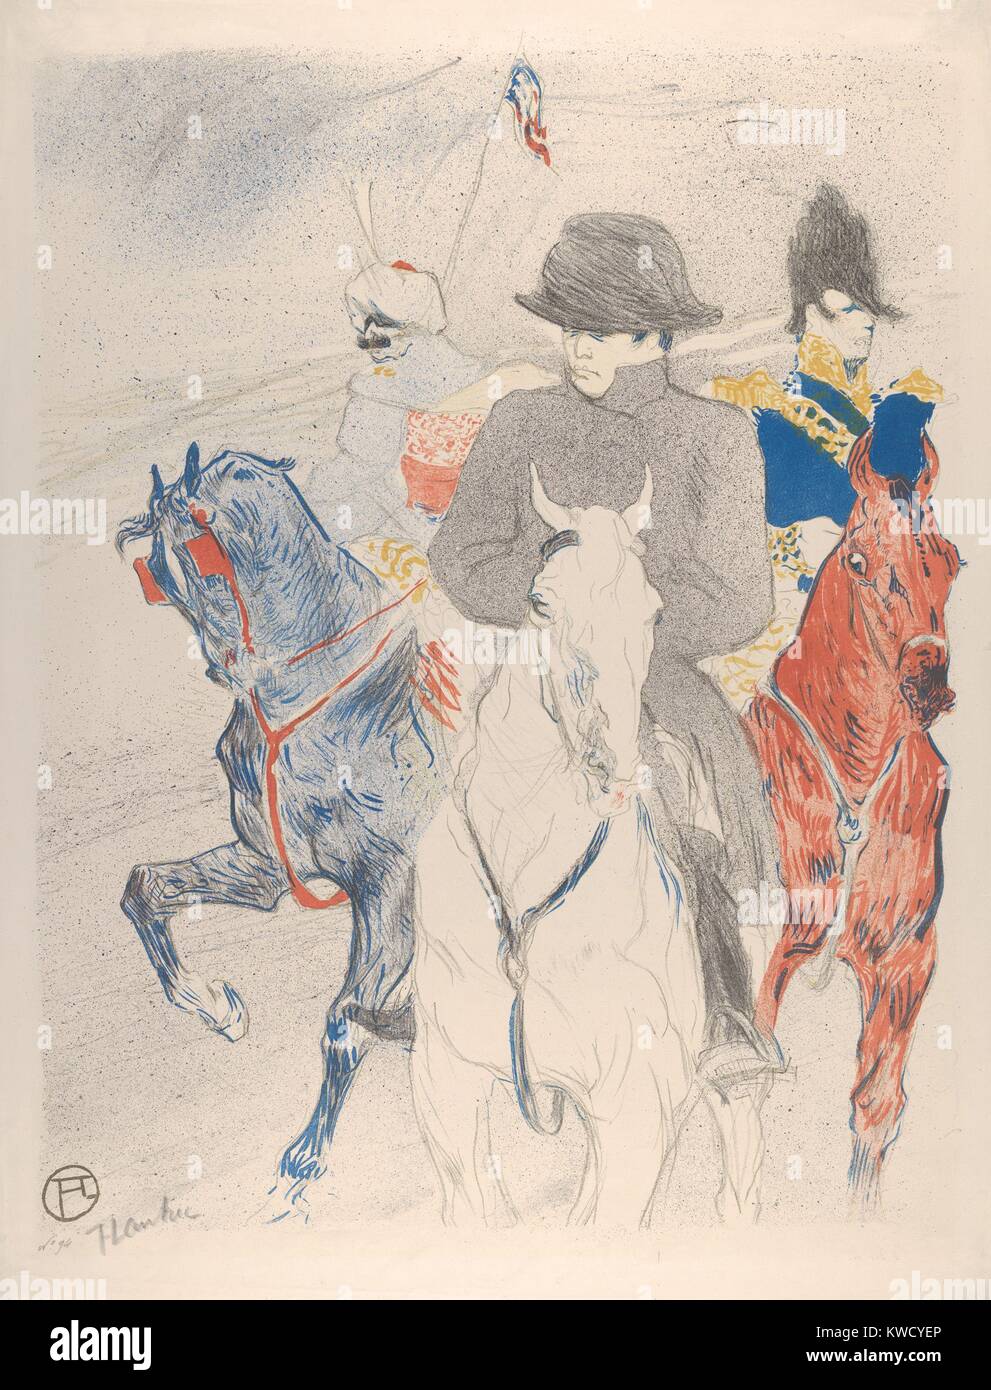 Napoleon, von Henri de Toulouse-Lautrec, 1895, French Post-Impressionist drucken. Diese Lithographie ist auf einer Zeichnung Lautrec in einem Wettbewerb eingereicht eine Biografie von Bonaparte zu werben. Nach Lautrecs Zeichnung 3. Platz gewonnen, er hat eine feine Kunst editio (BSLOC 2017 5 77) Stockfoto